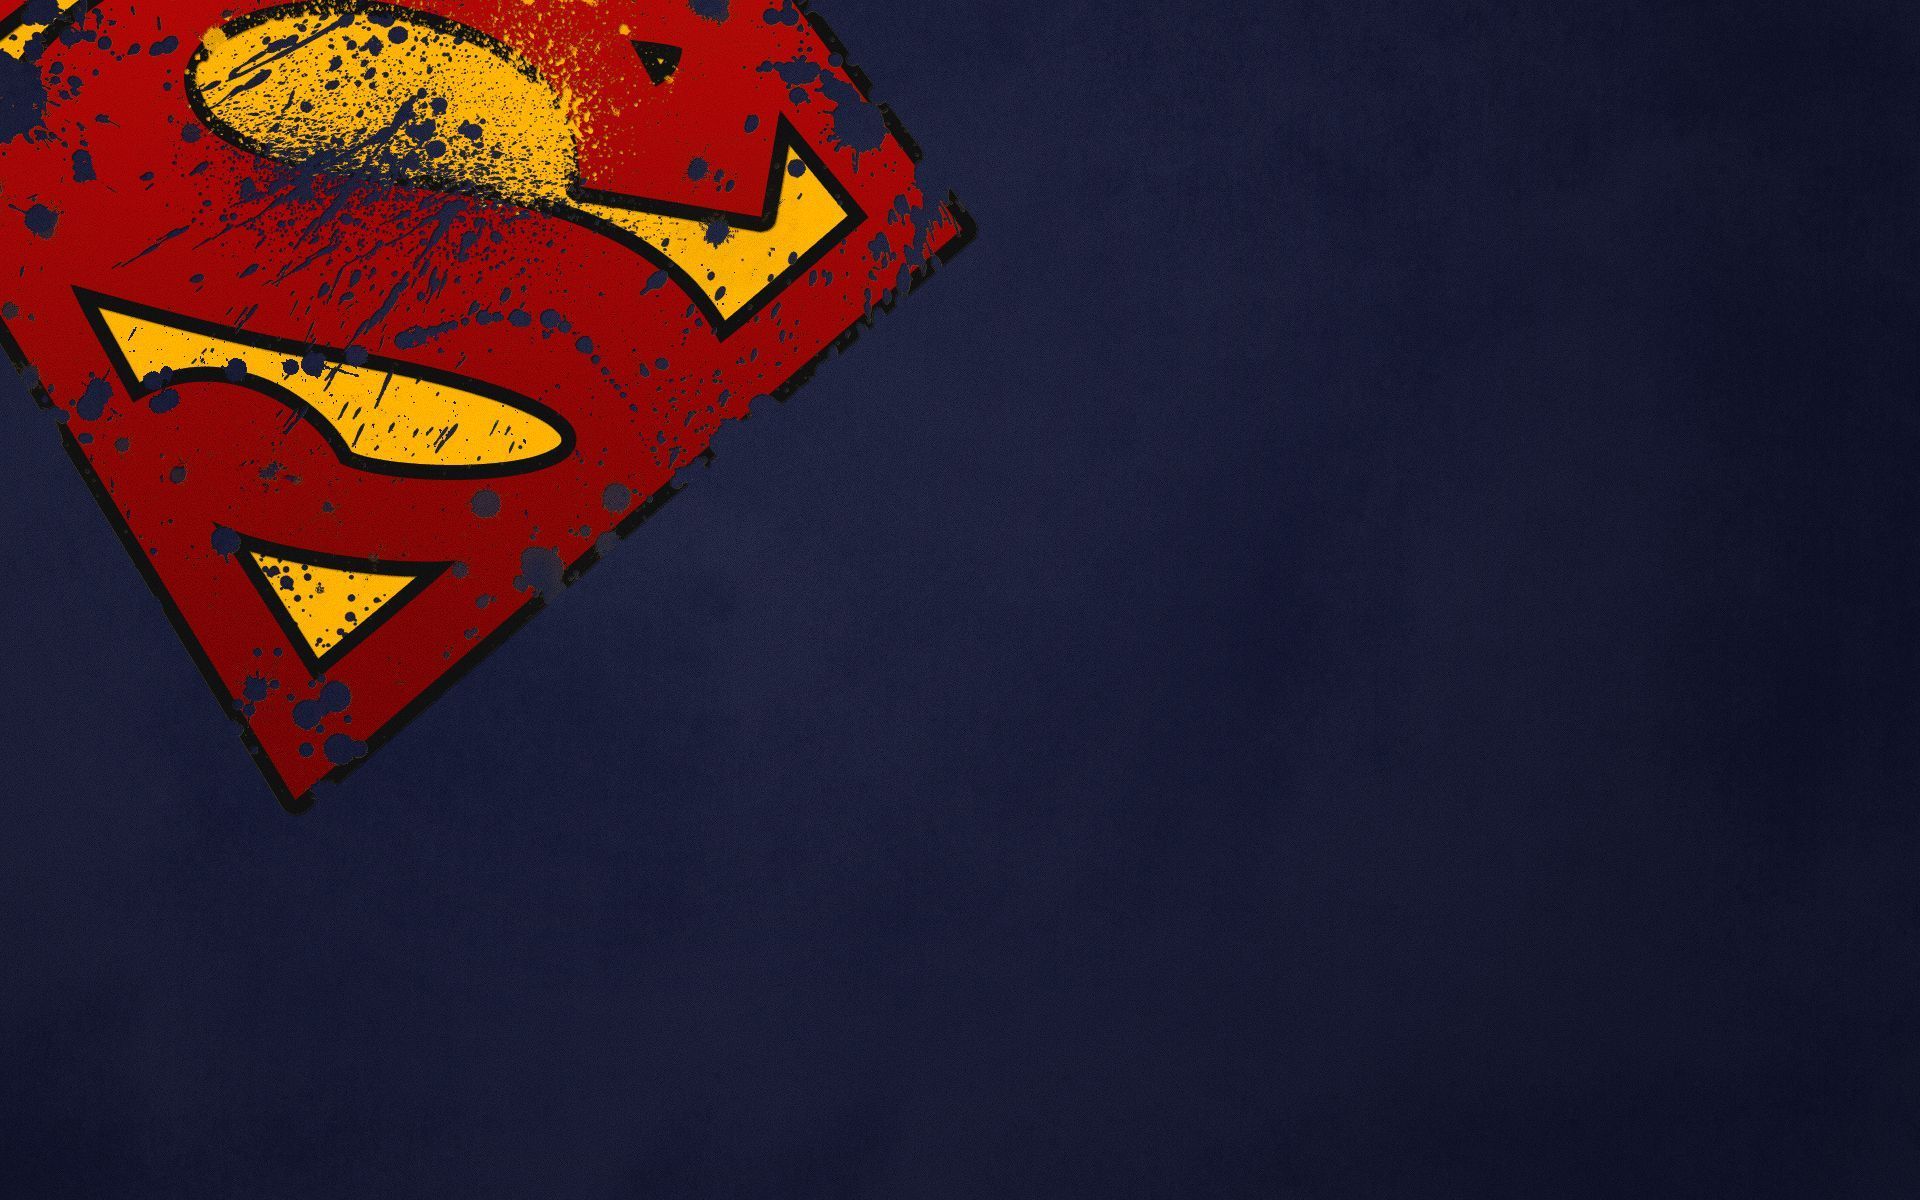 Superman HD wallpapers - Man of Steel or Clark Kent desktop ...